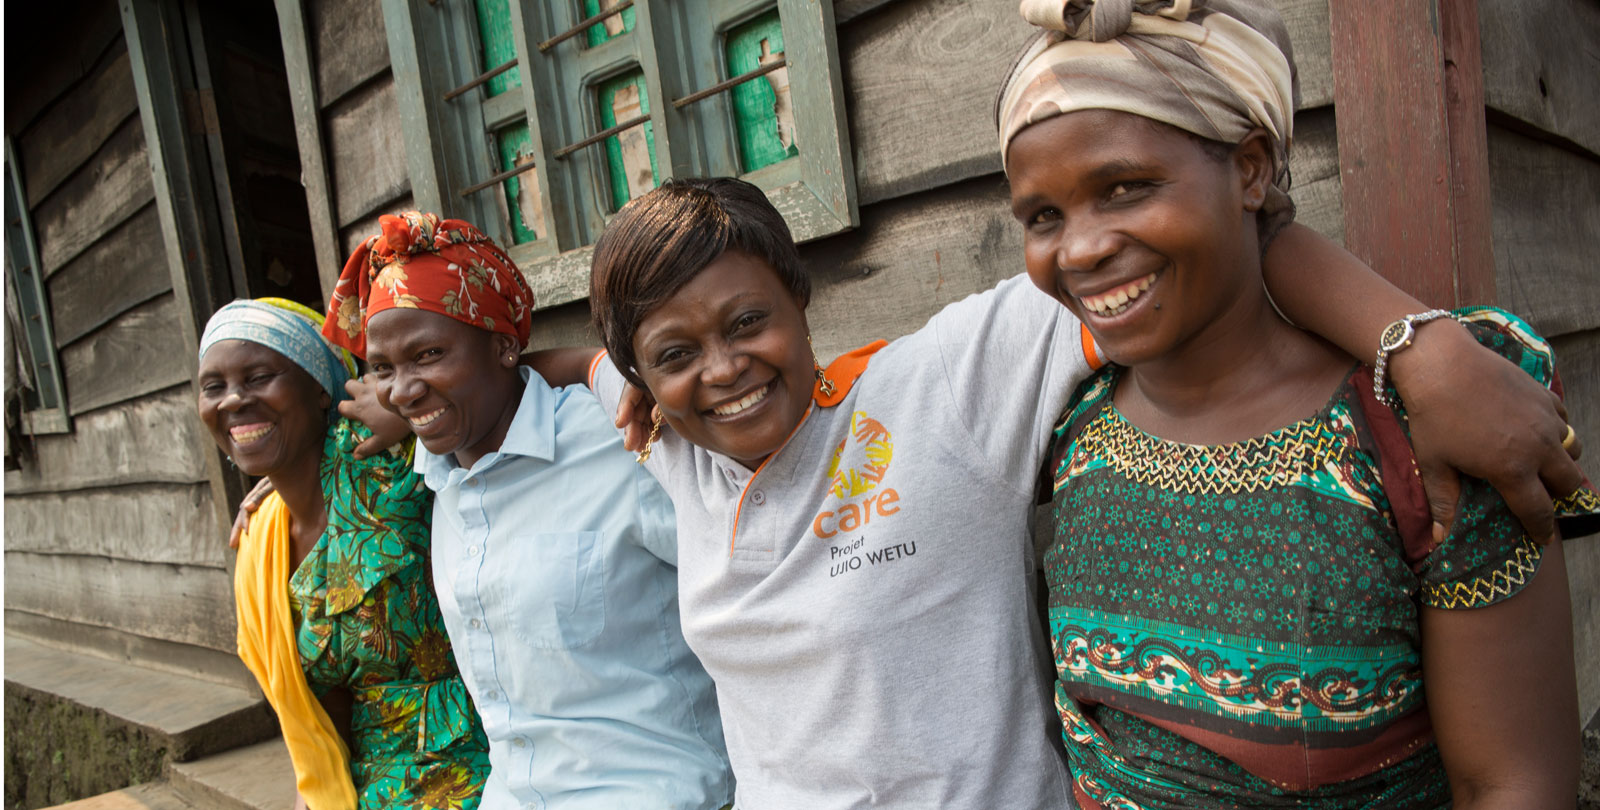 Des bénévoles de CARE au Congo s'entrelacent en souriant